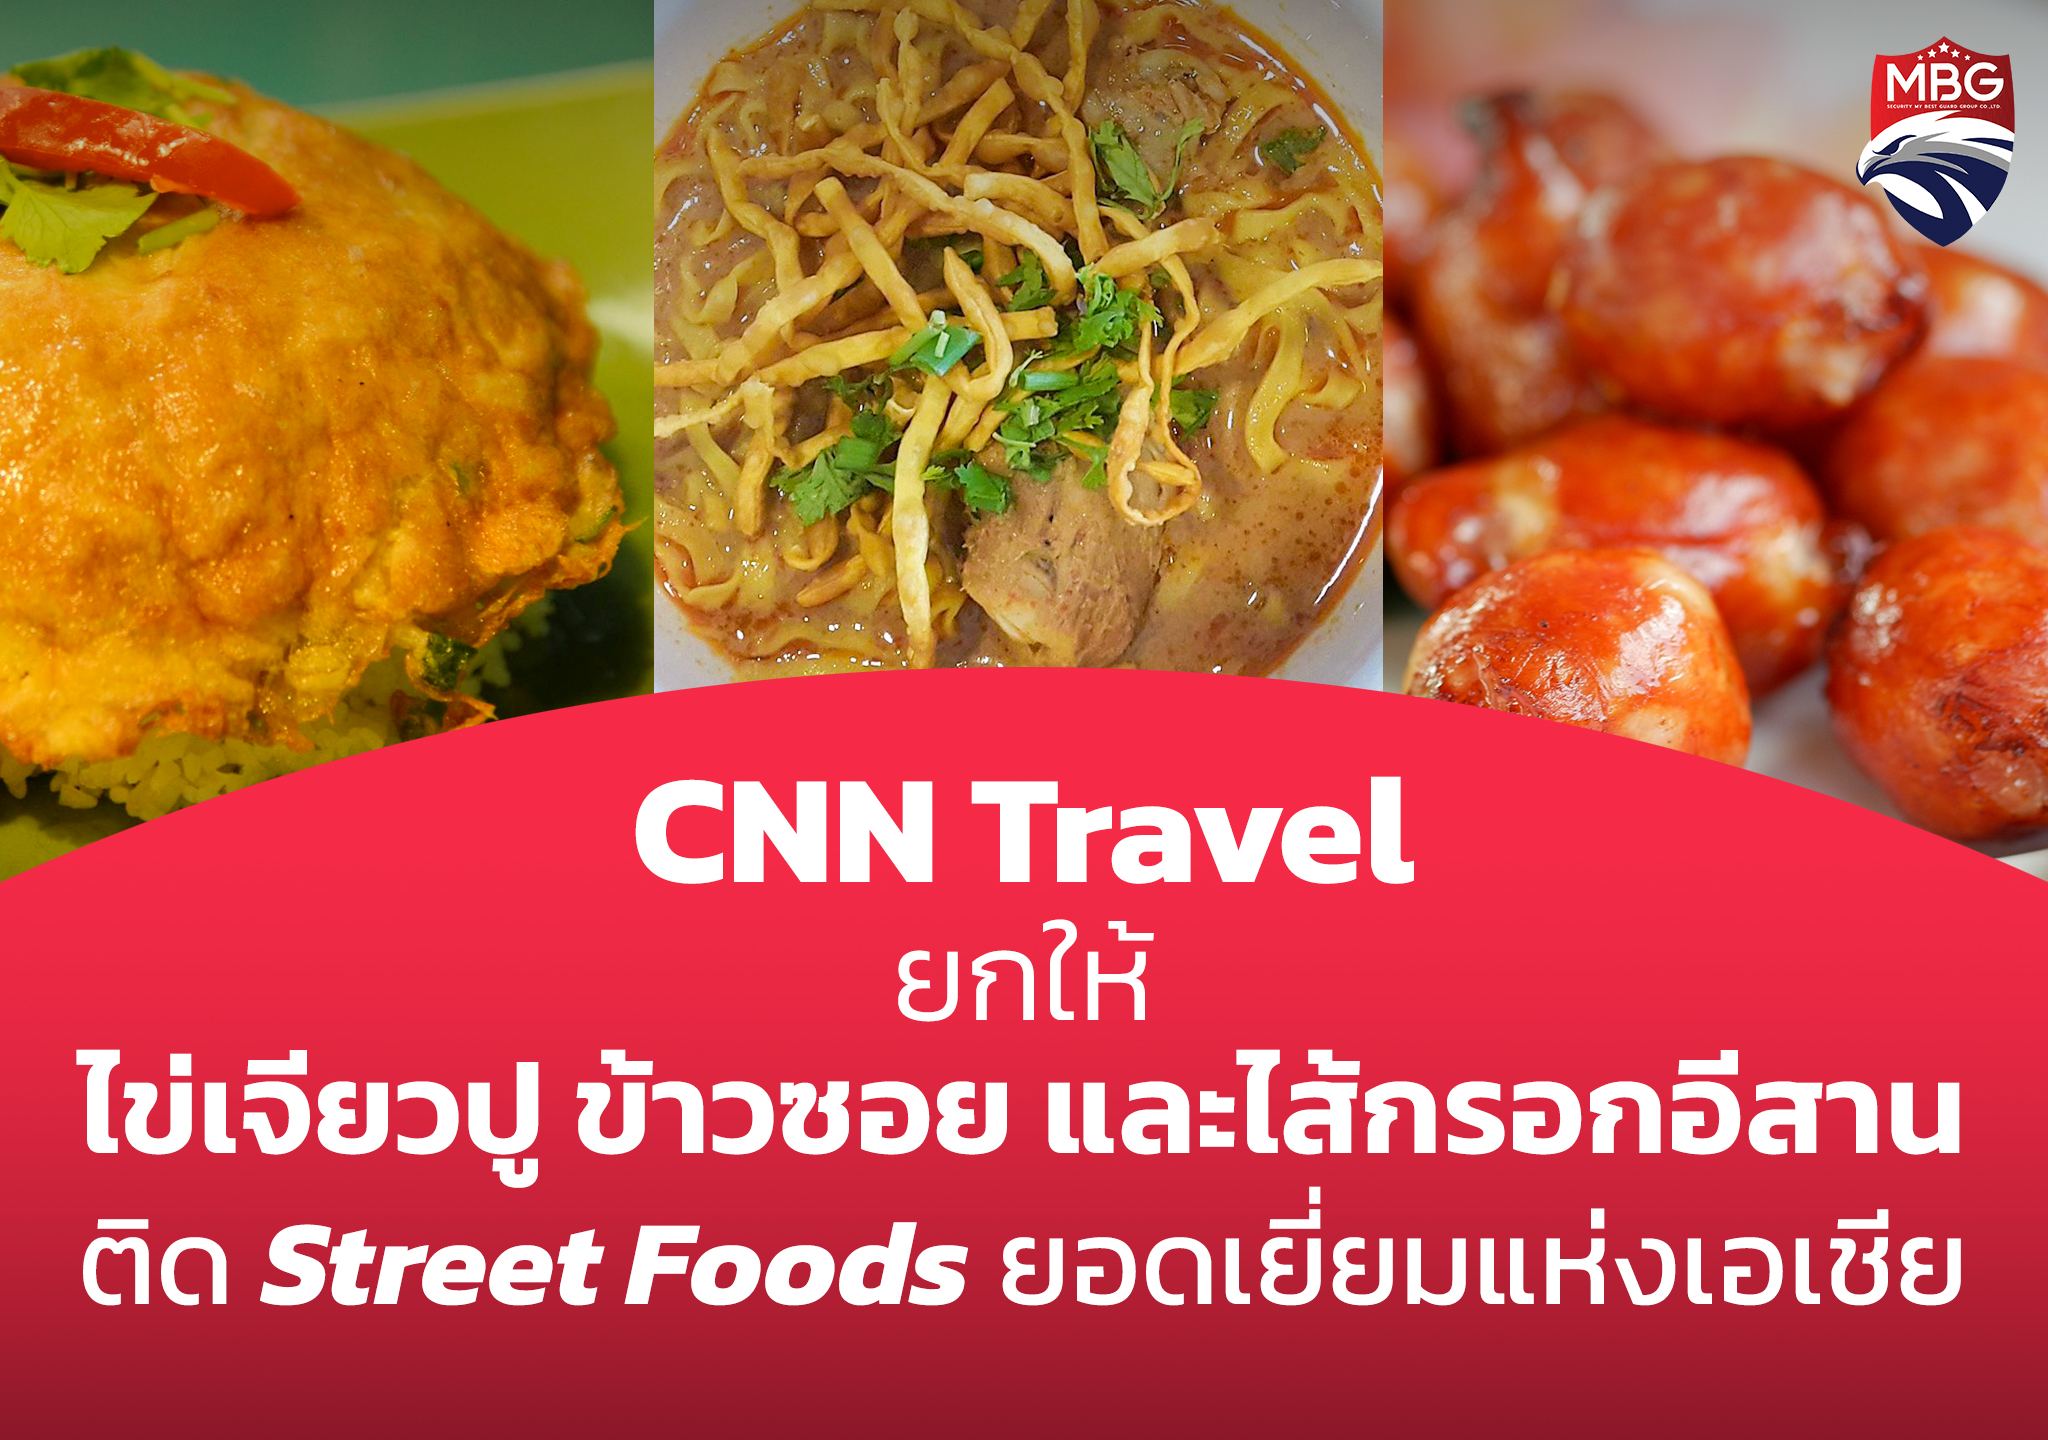 CNN Travel ให้ 3 อาหารไทย ติดรายชื่อ Street Foods ยอดเยี่ยมแห่งเอเชีย